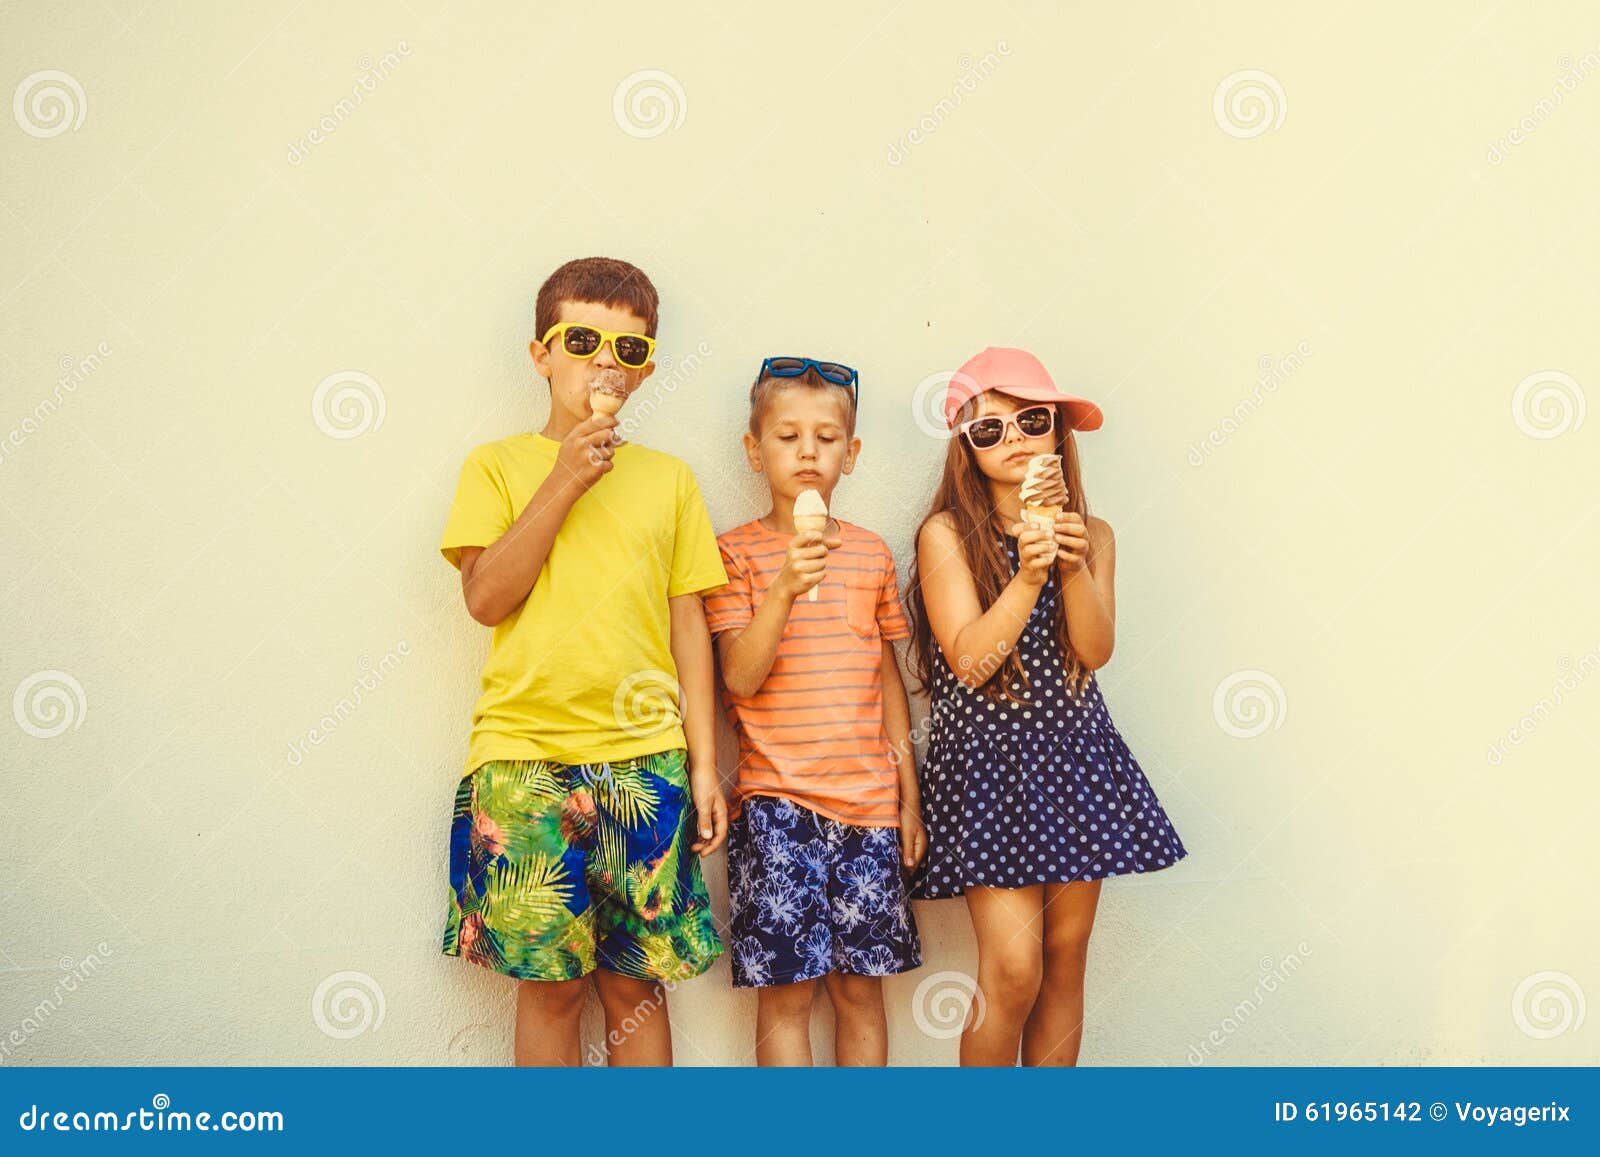 Meninos e menina das crianças que comem o gelado. Crianças que comem o gelato e o gelado macio do saque Os meninos e a menina nos óculos de sol que apreciam férias de verão vacation Filtro de Instagram